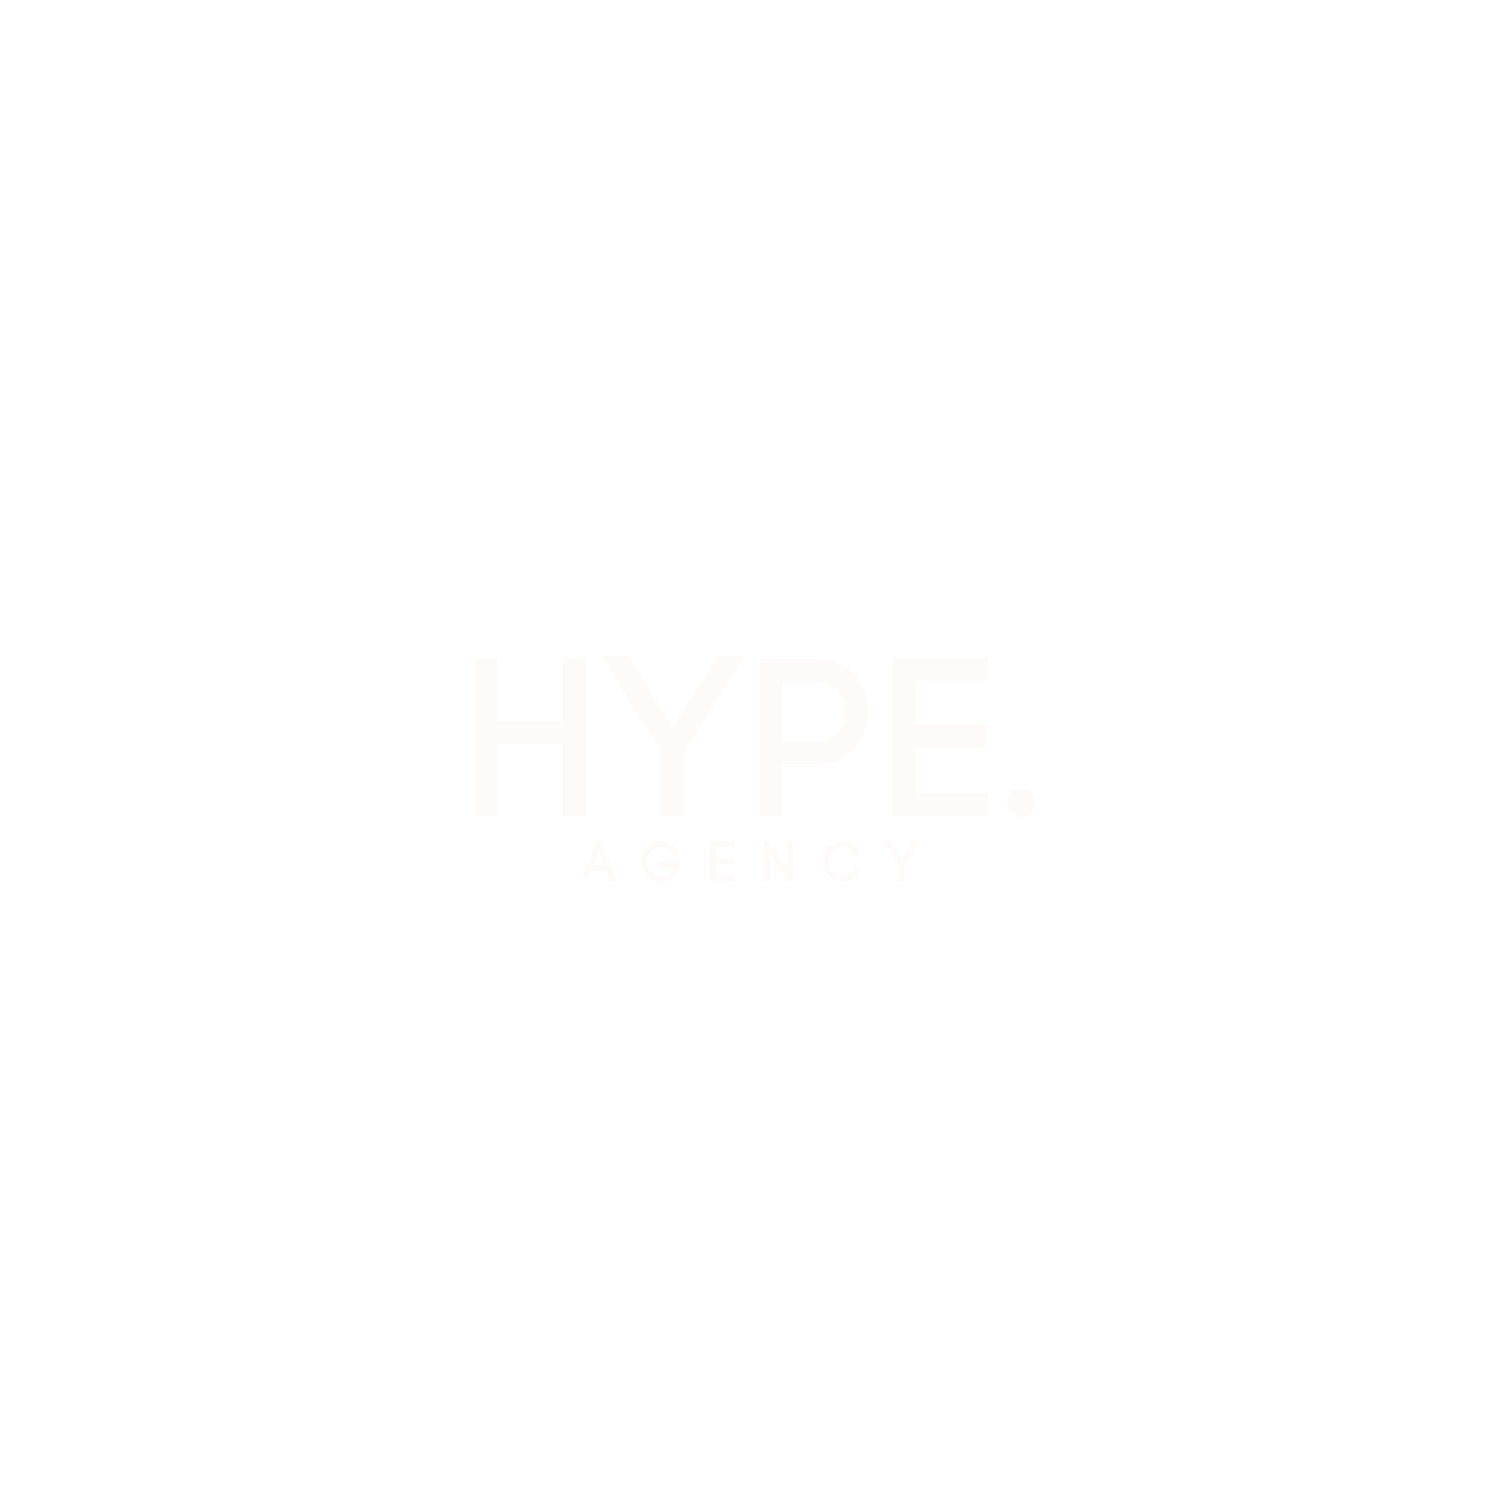 HYPE Agency Portfolio